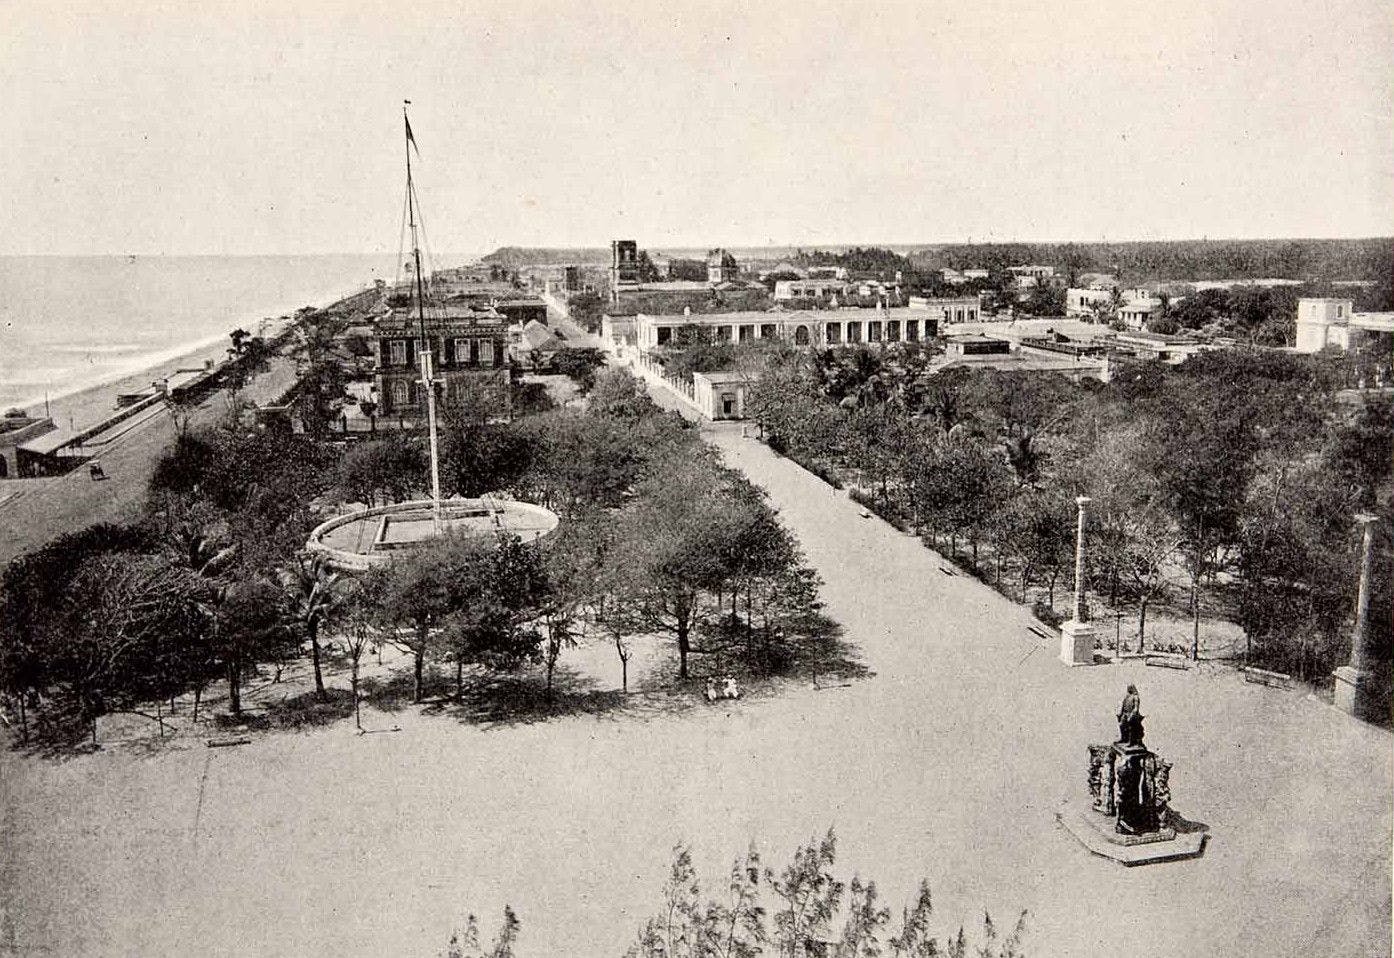 Pondicherry Waterfront (1900)